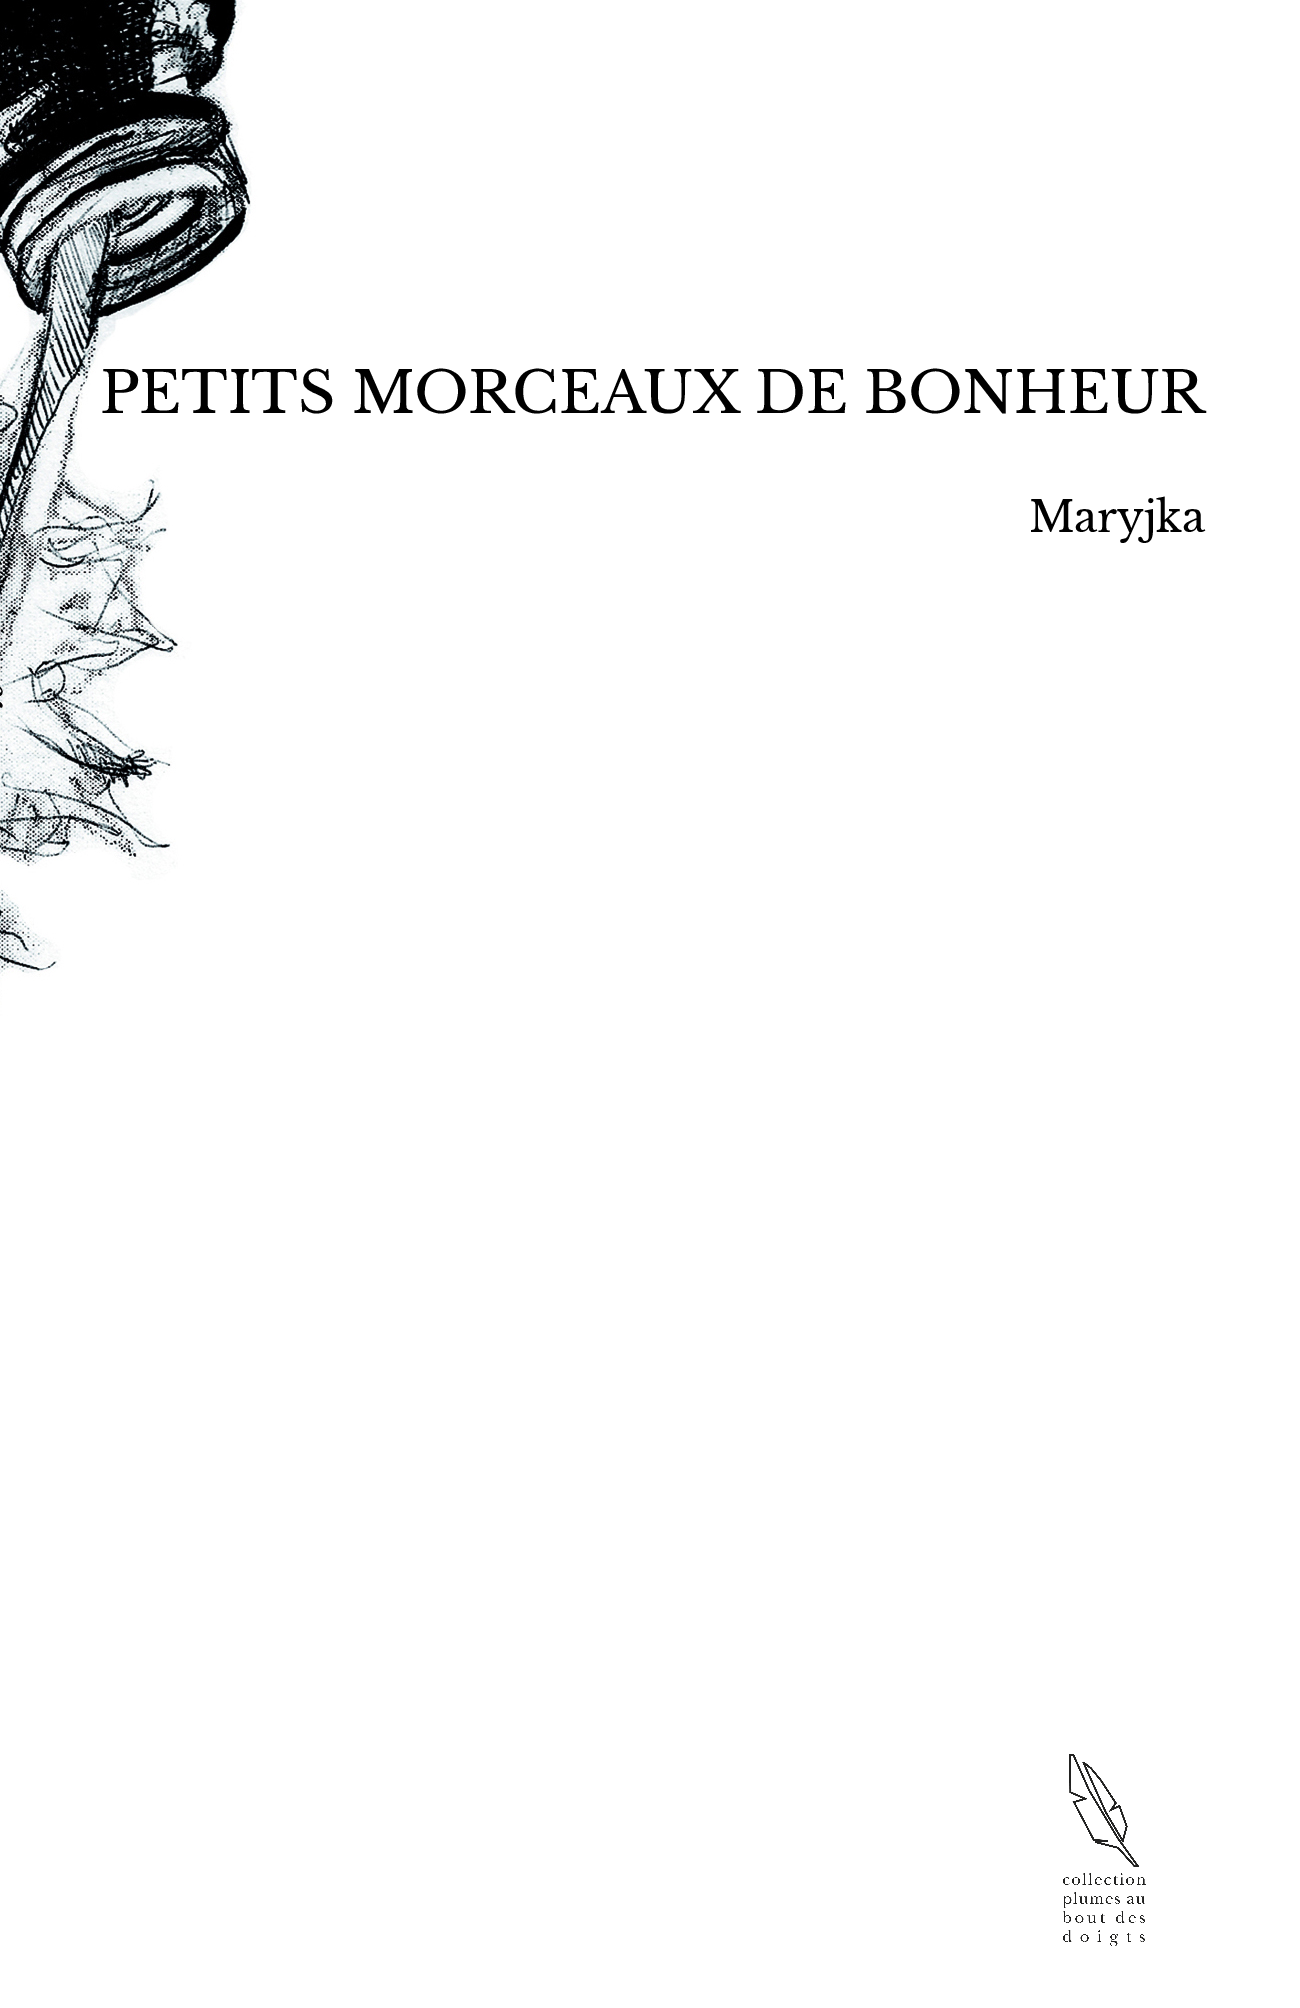 PETITS MORCEAUX DE BONHEUR